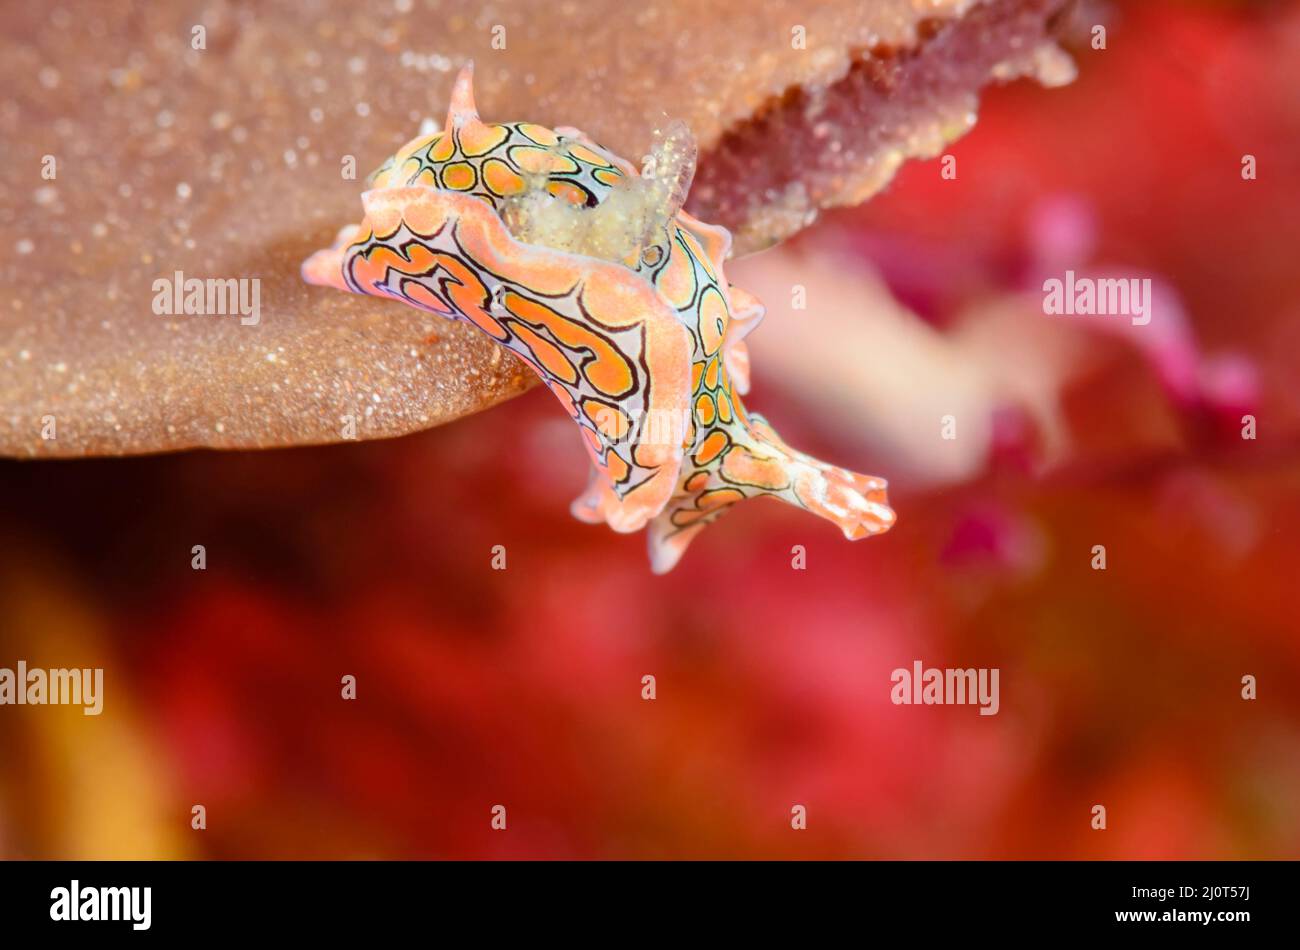 Headshield sea slug, Sagaminopteron psychedelicum, Alor, Nusa Tenggara, Indonesia, Pacific Stock Photo